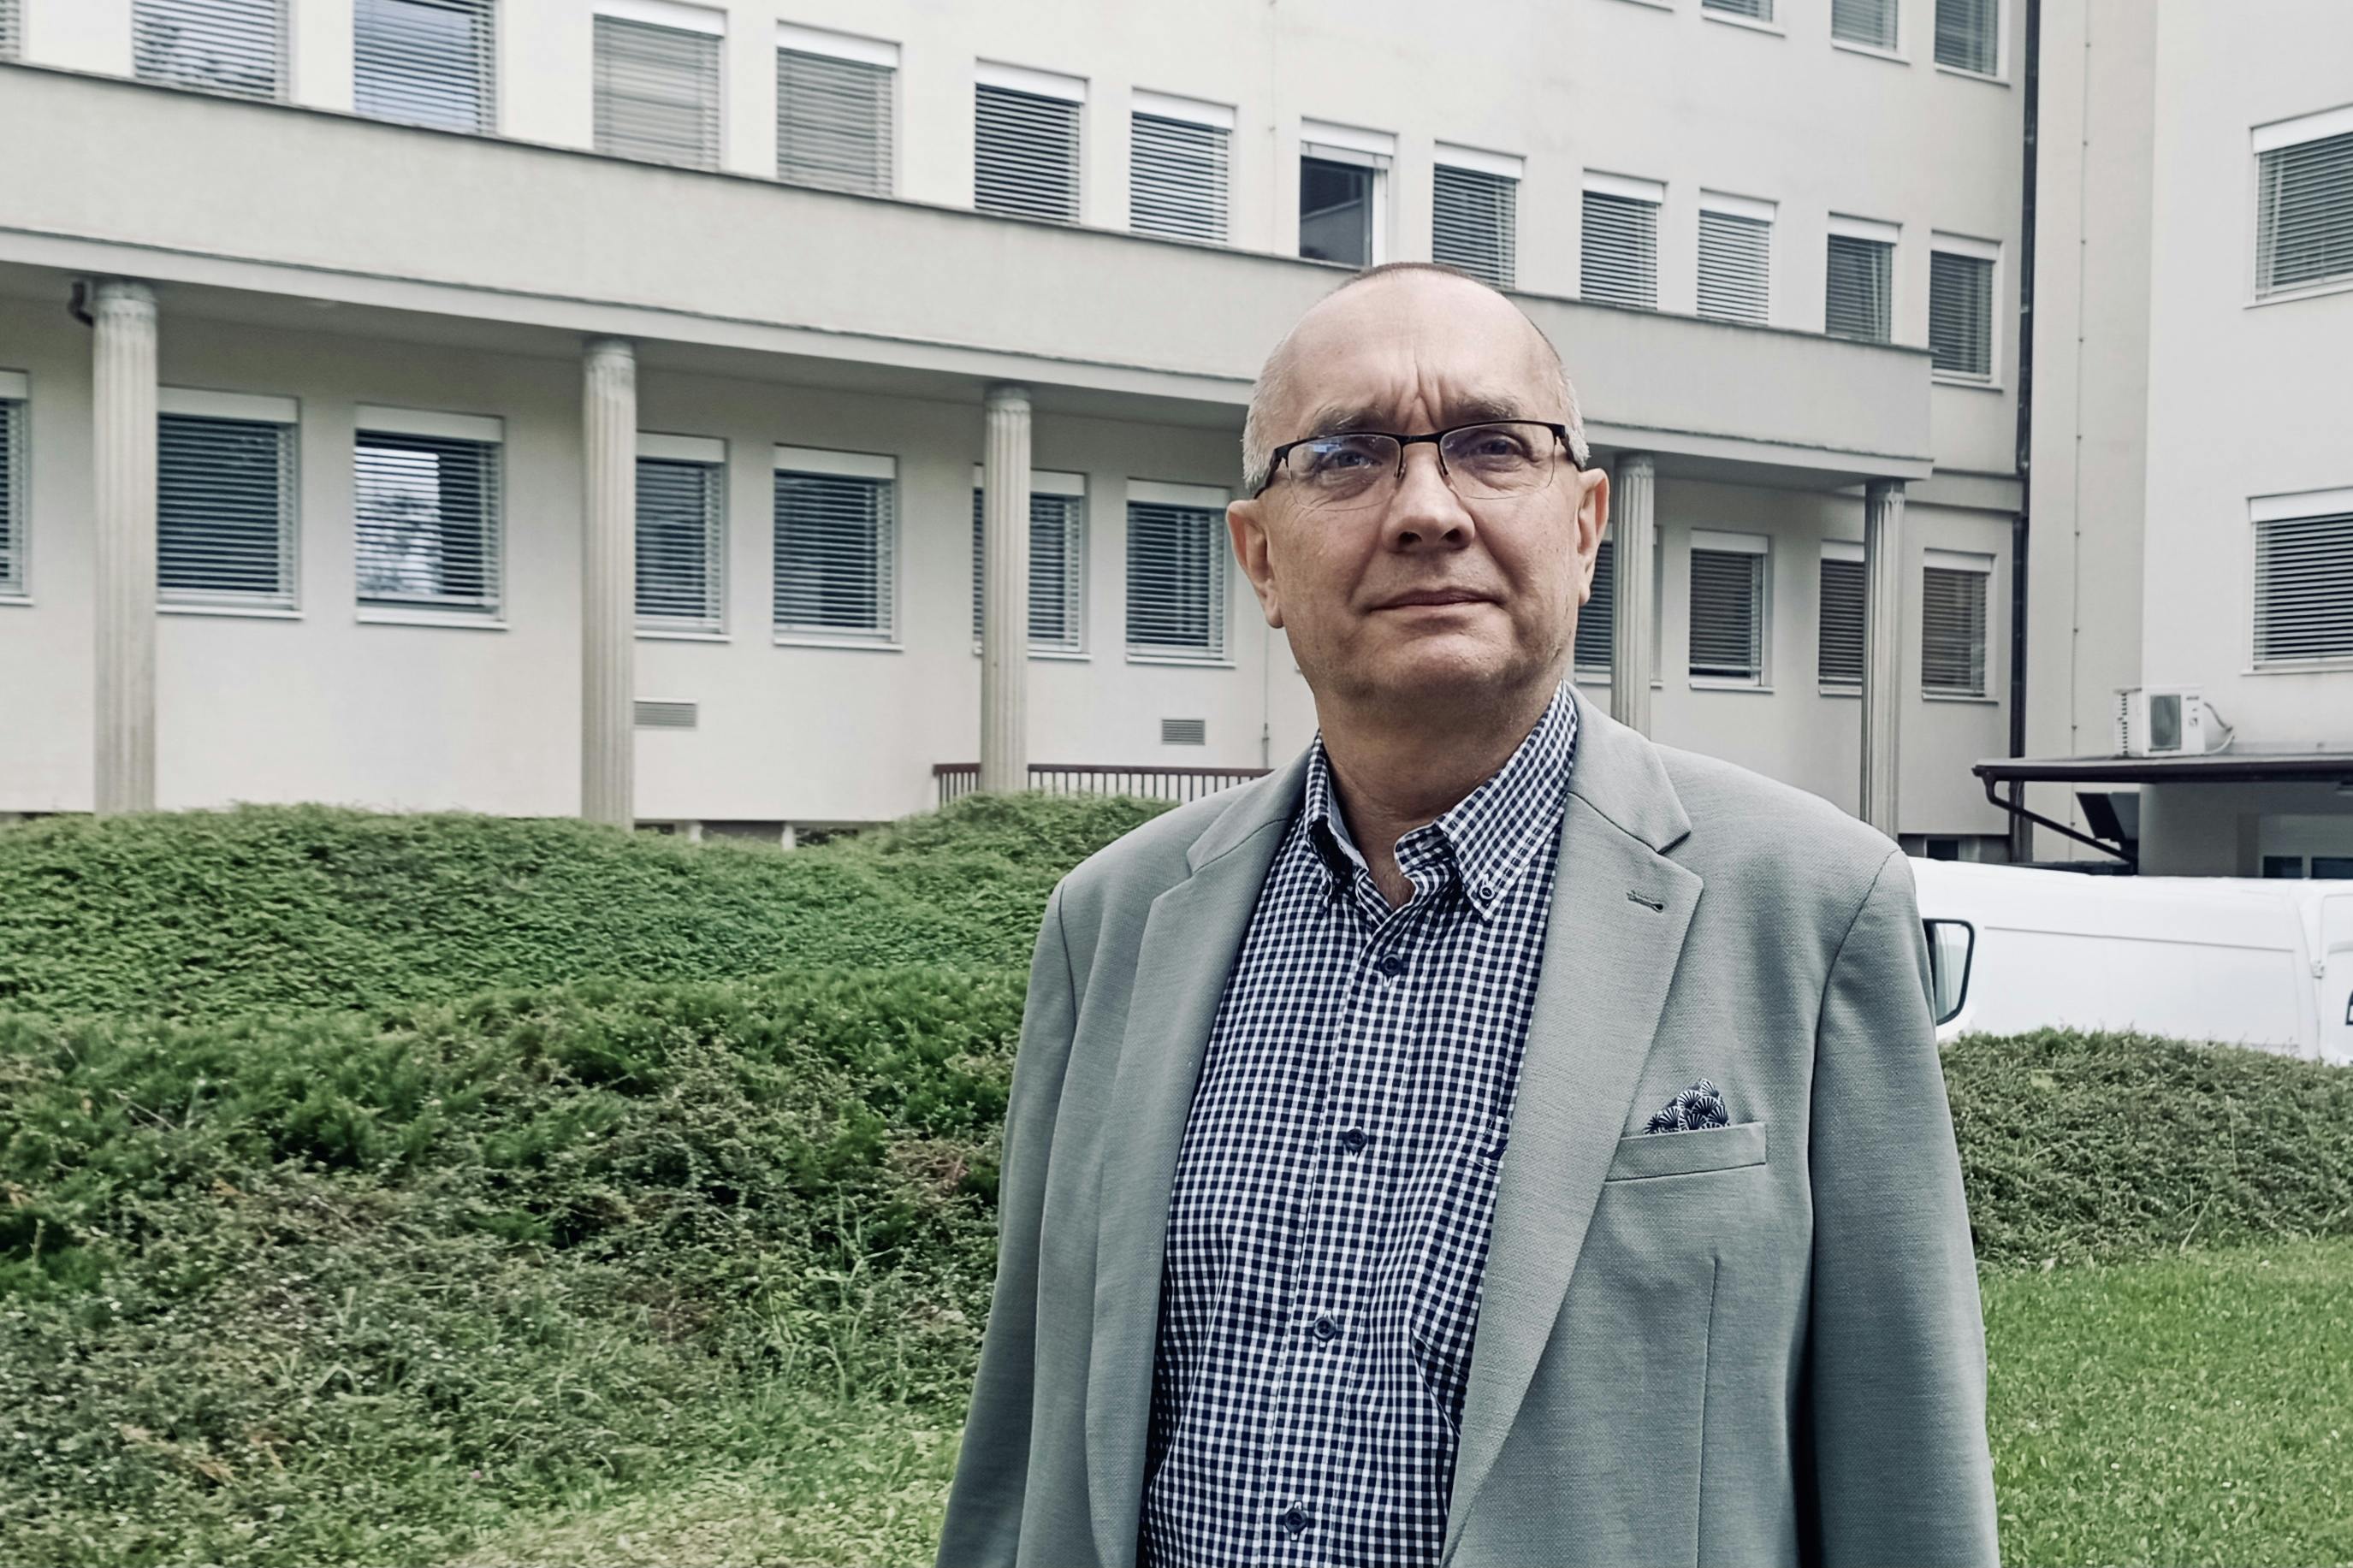 Odcházející jednatel boskovické nemocnice Dan Štěpánský